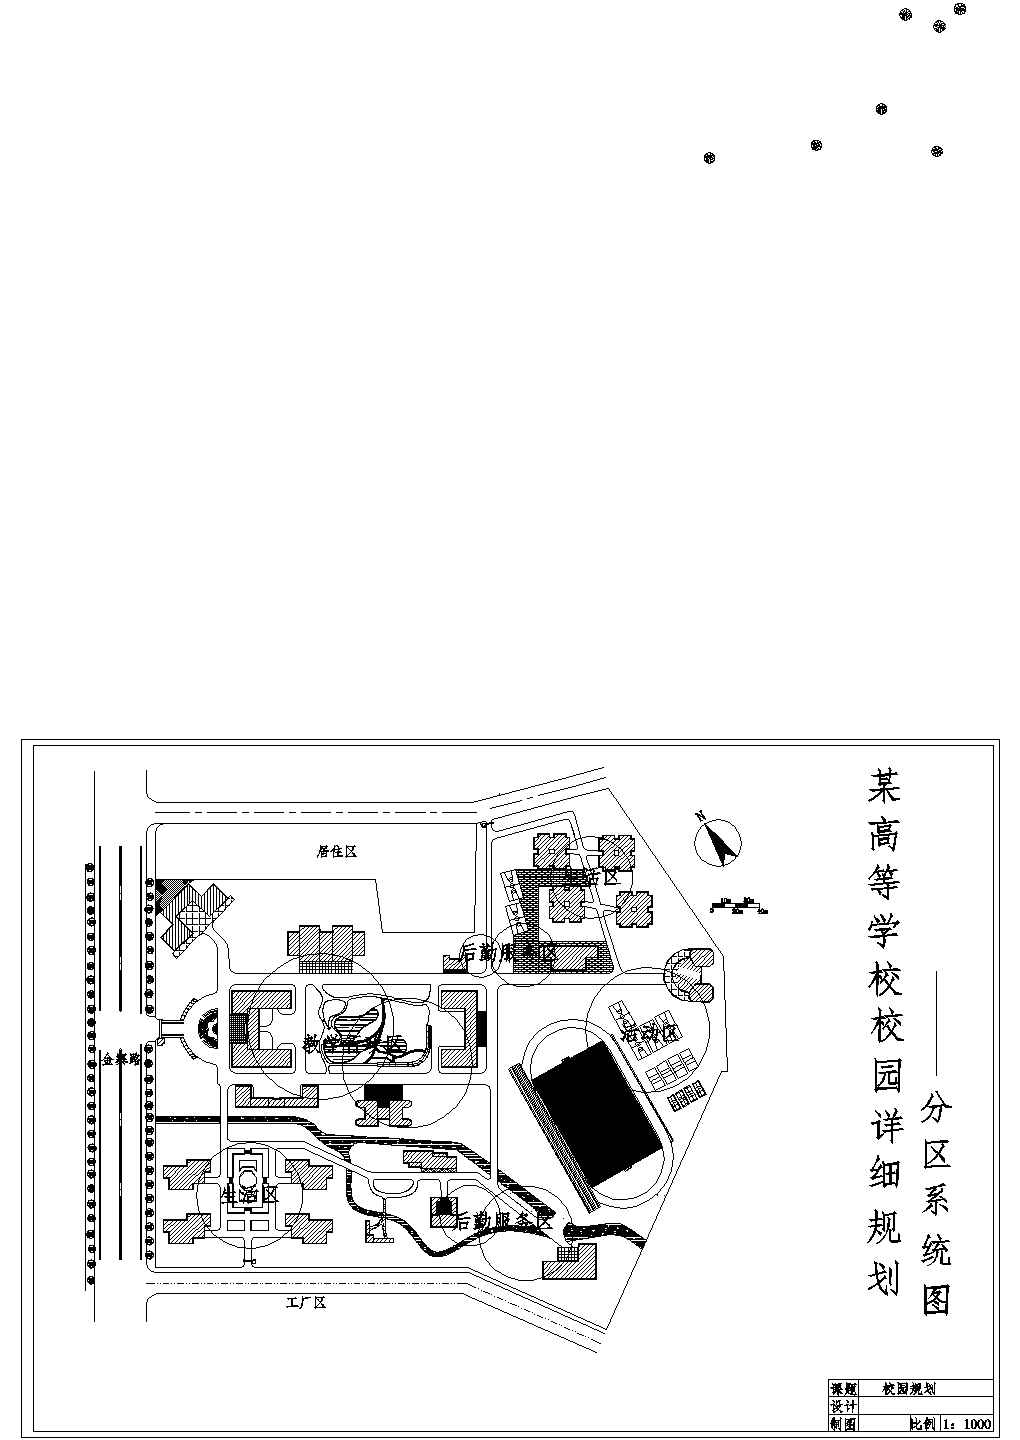 淮南市某实验中学小区平面布局设计CAD图纸